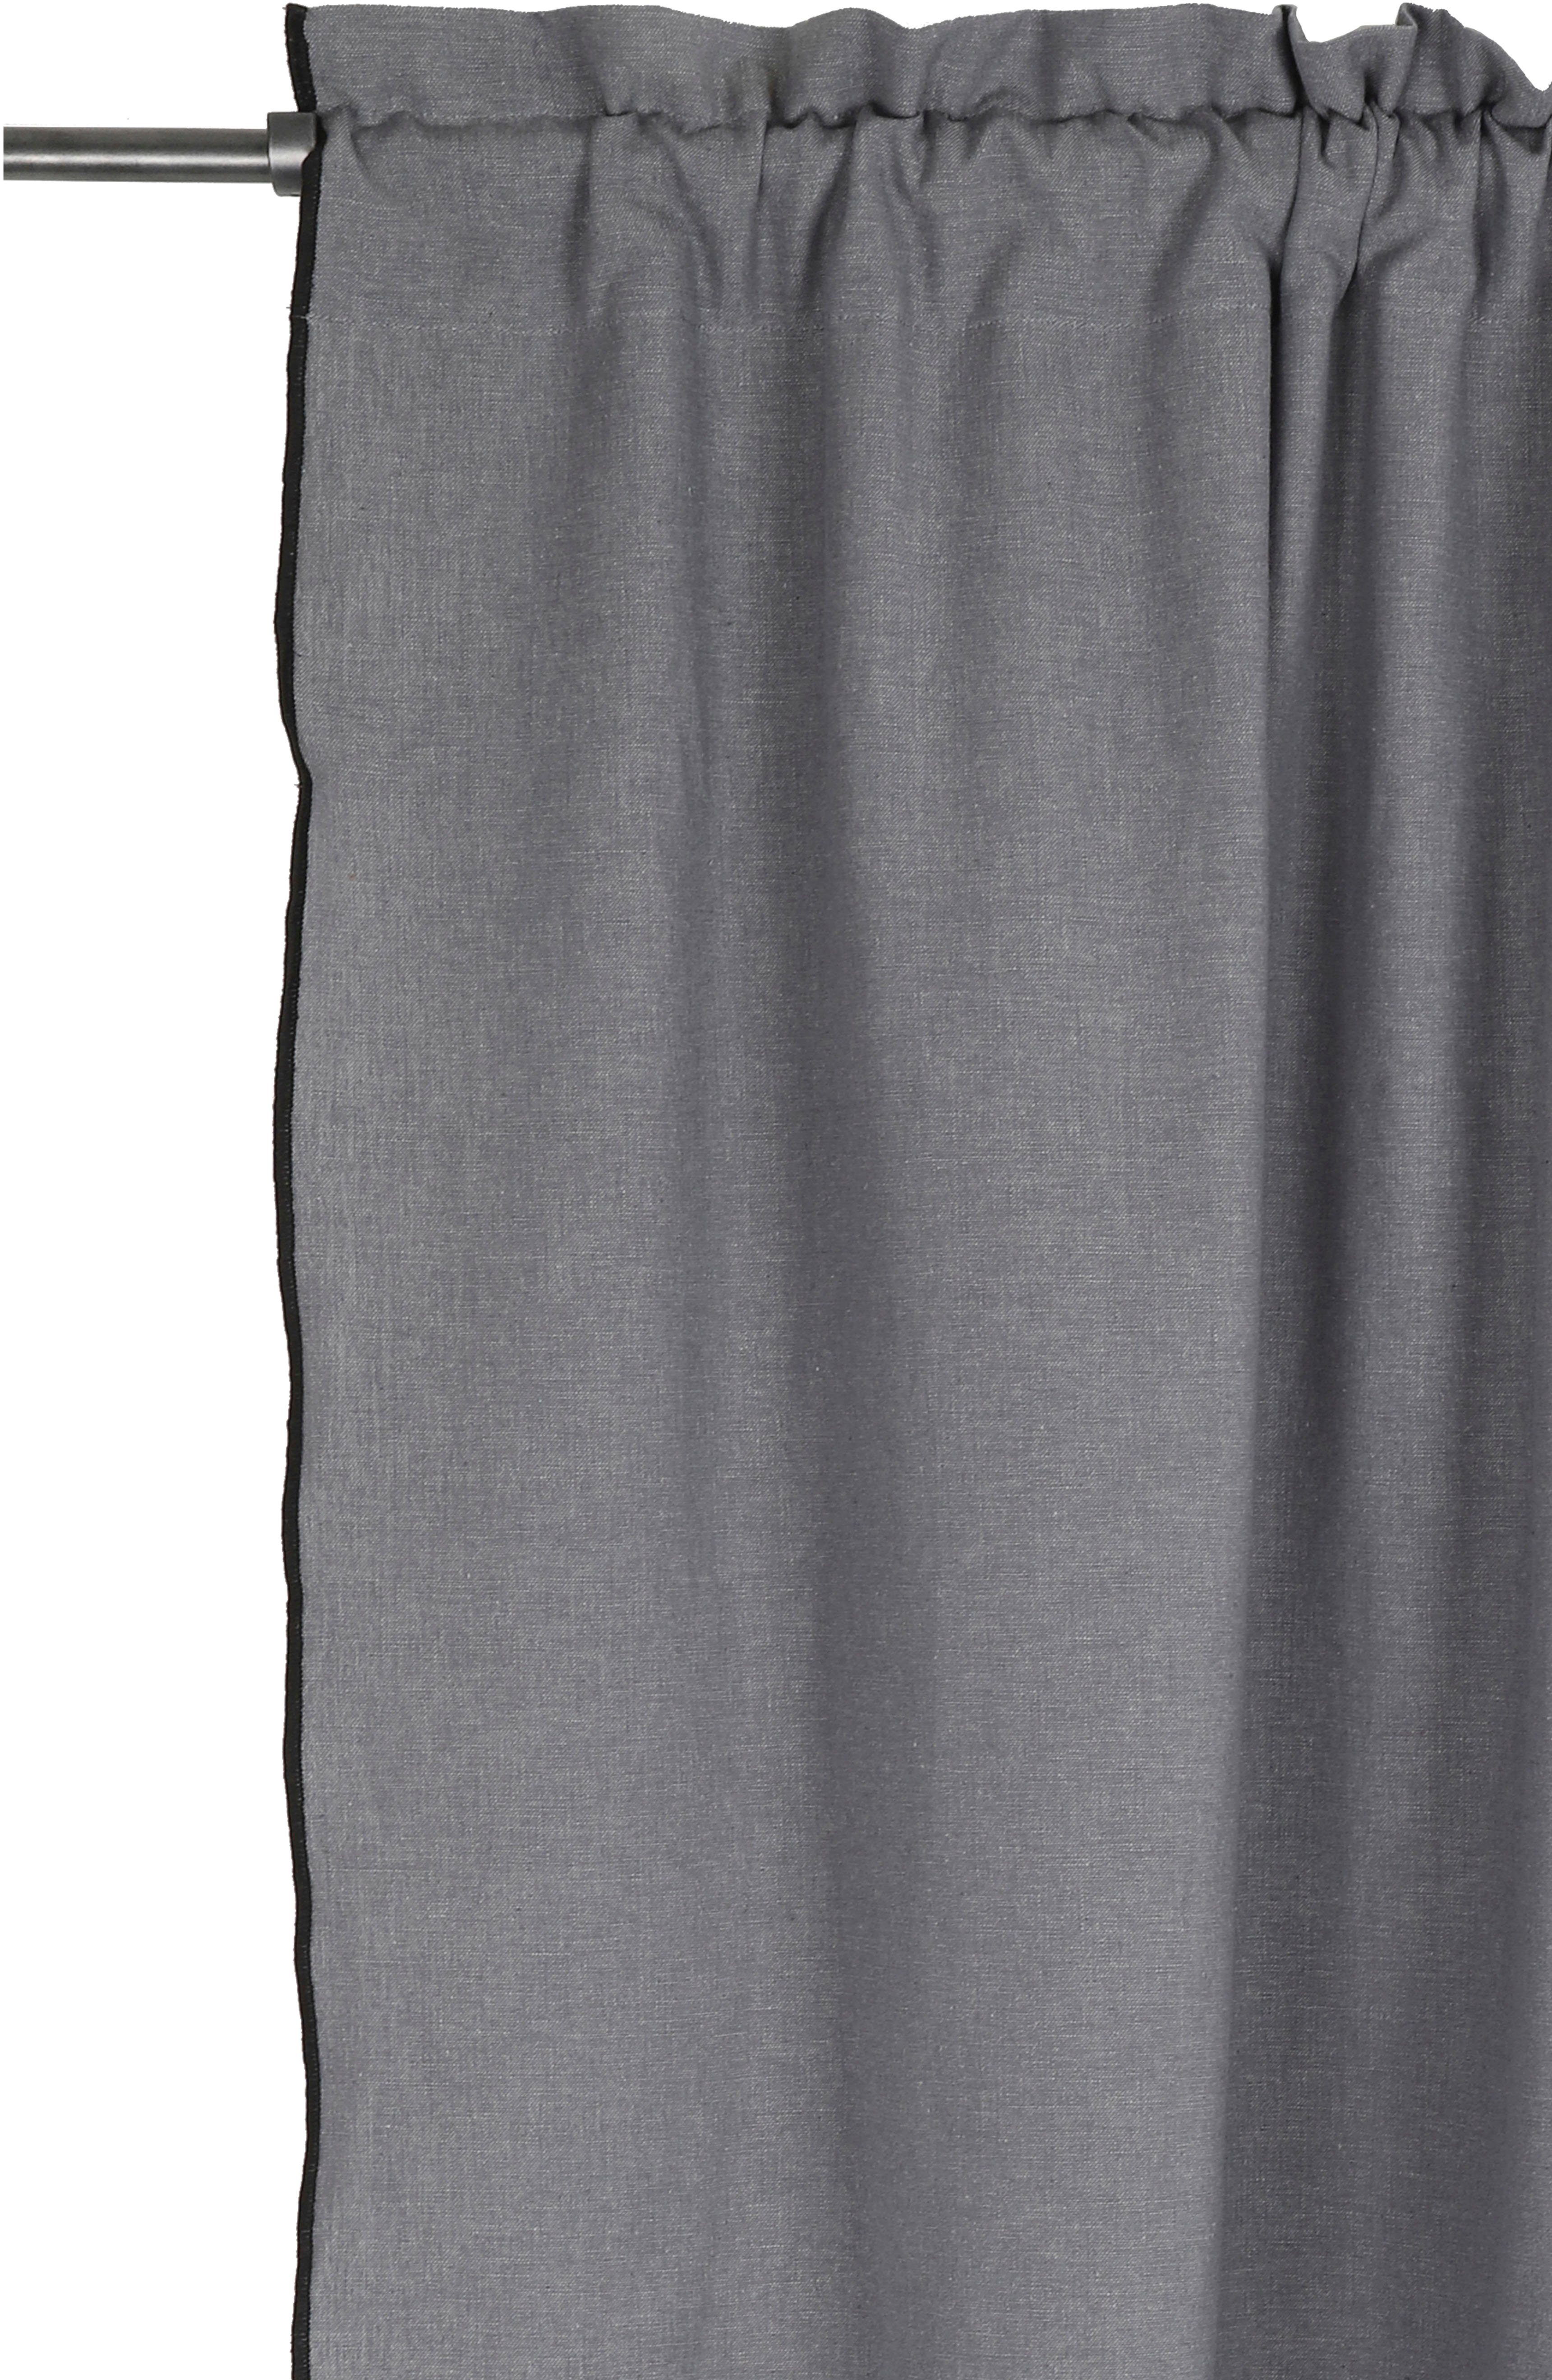 Vorhang Ellen, andas, Stangendurchzug (1 grau verschiedene mit blickdicht, Overlocknaht, blickdicht, Größen schwarzen St), Unifarben